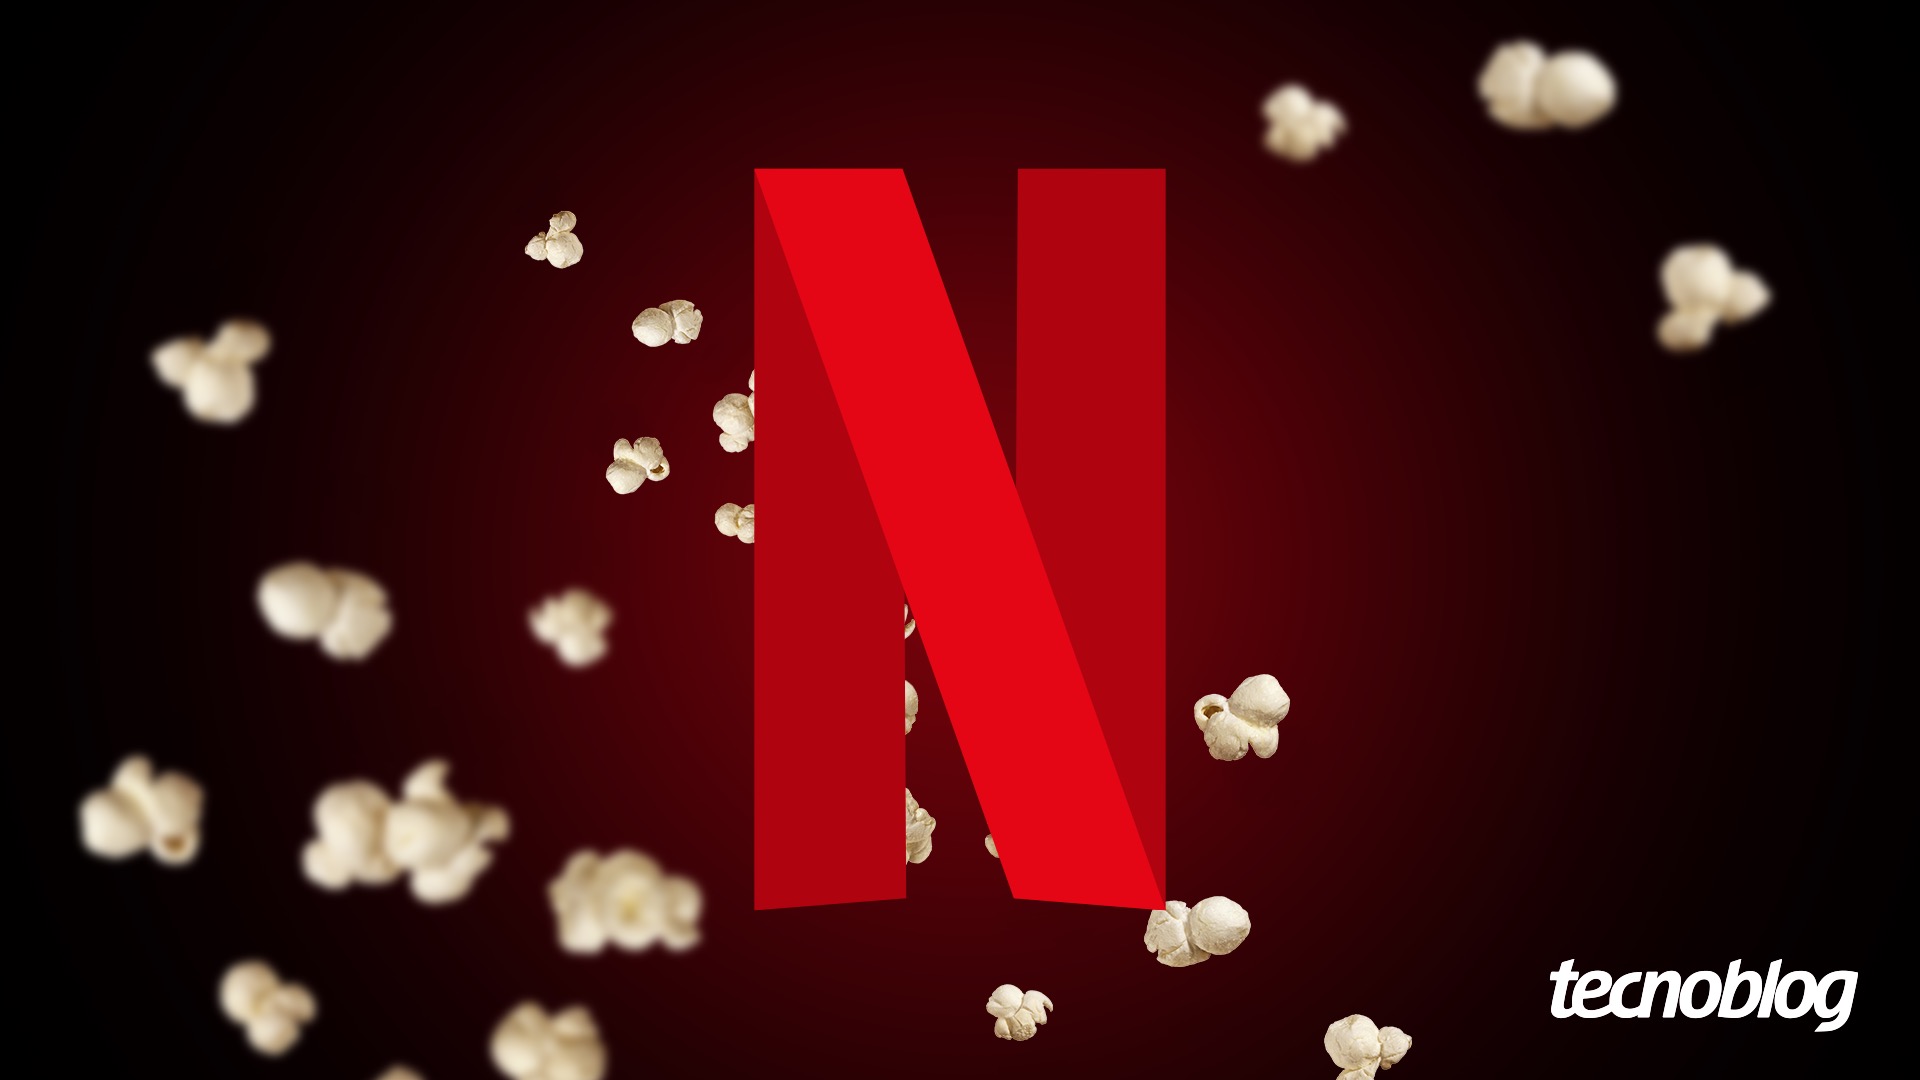 Netflix vai expandir combate a compartilhamento de senha até março –  Tecnoblog